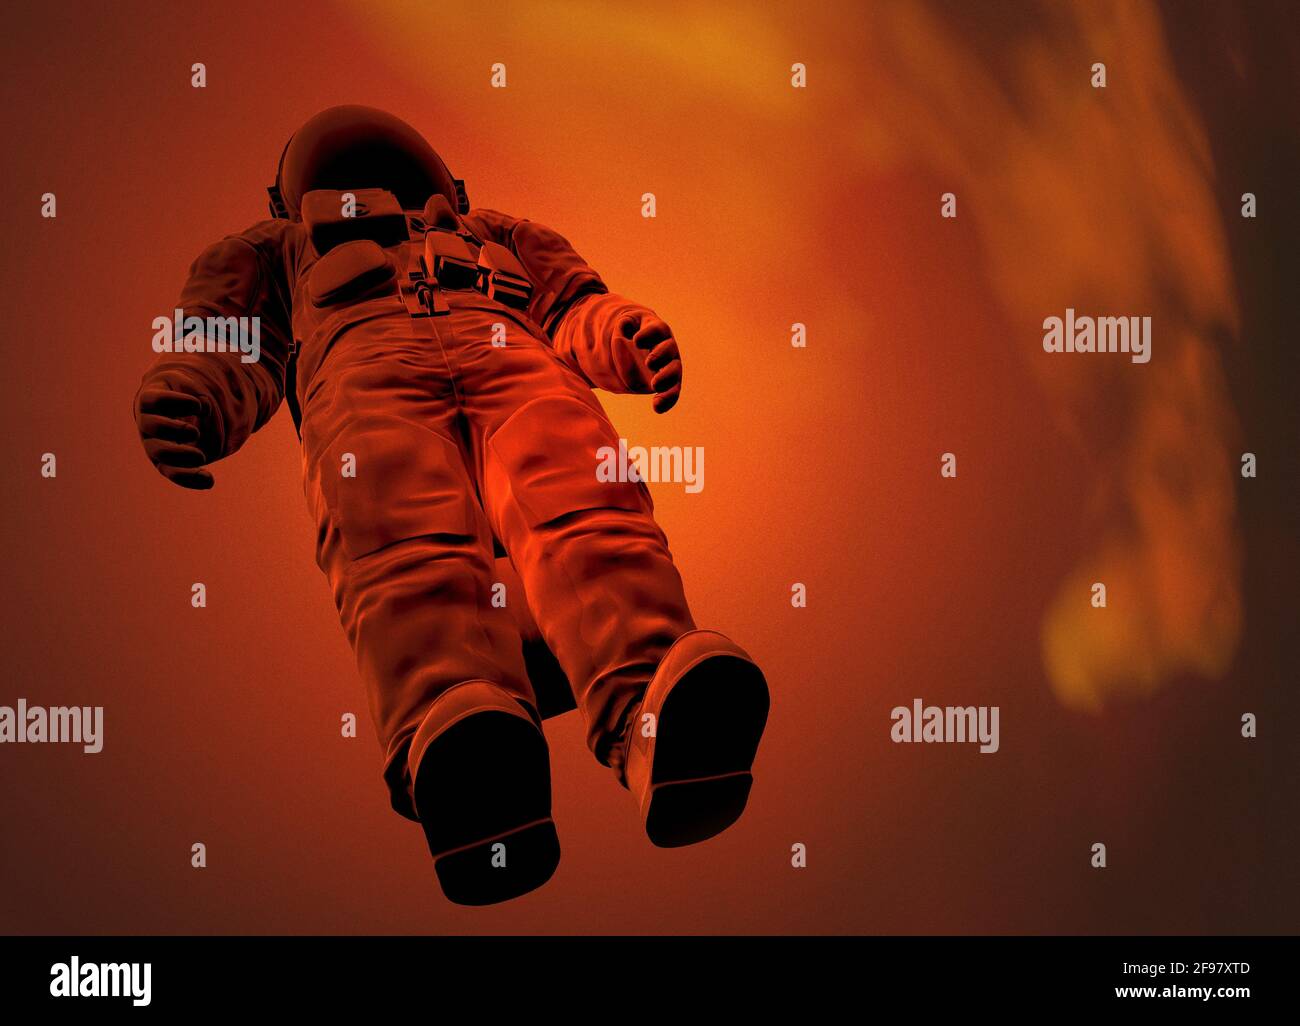 Viaje espacial, ilustración conceptual Foto de stock